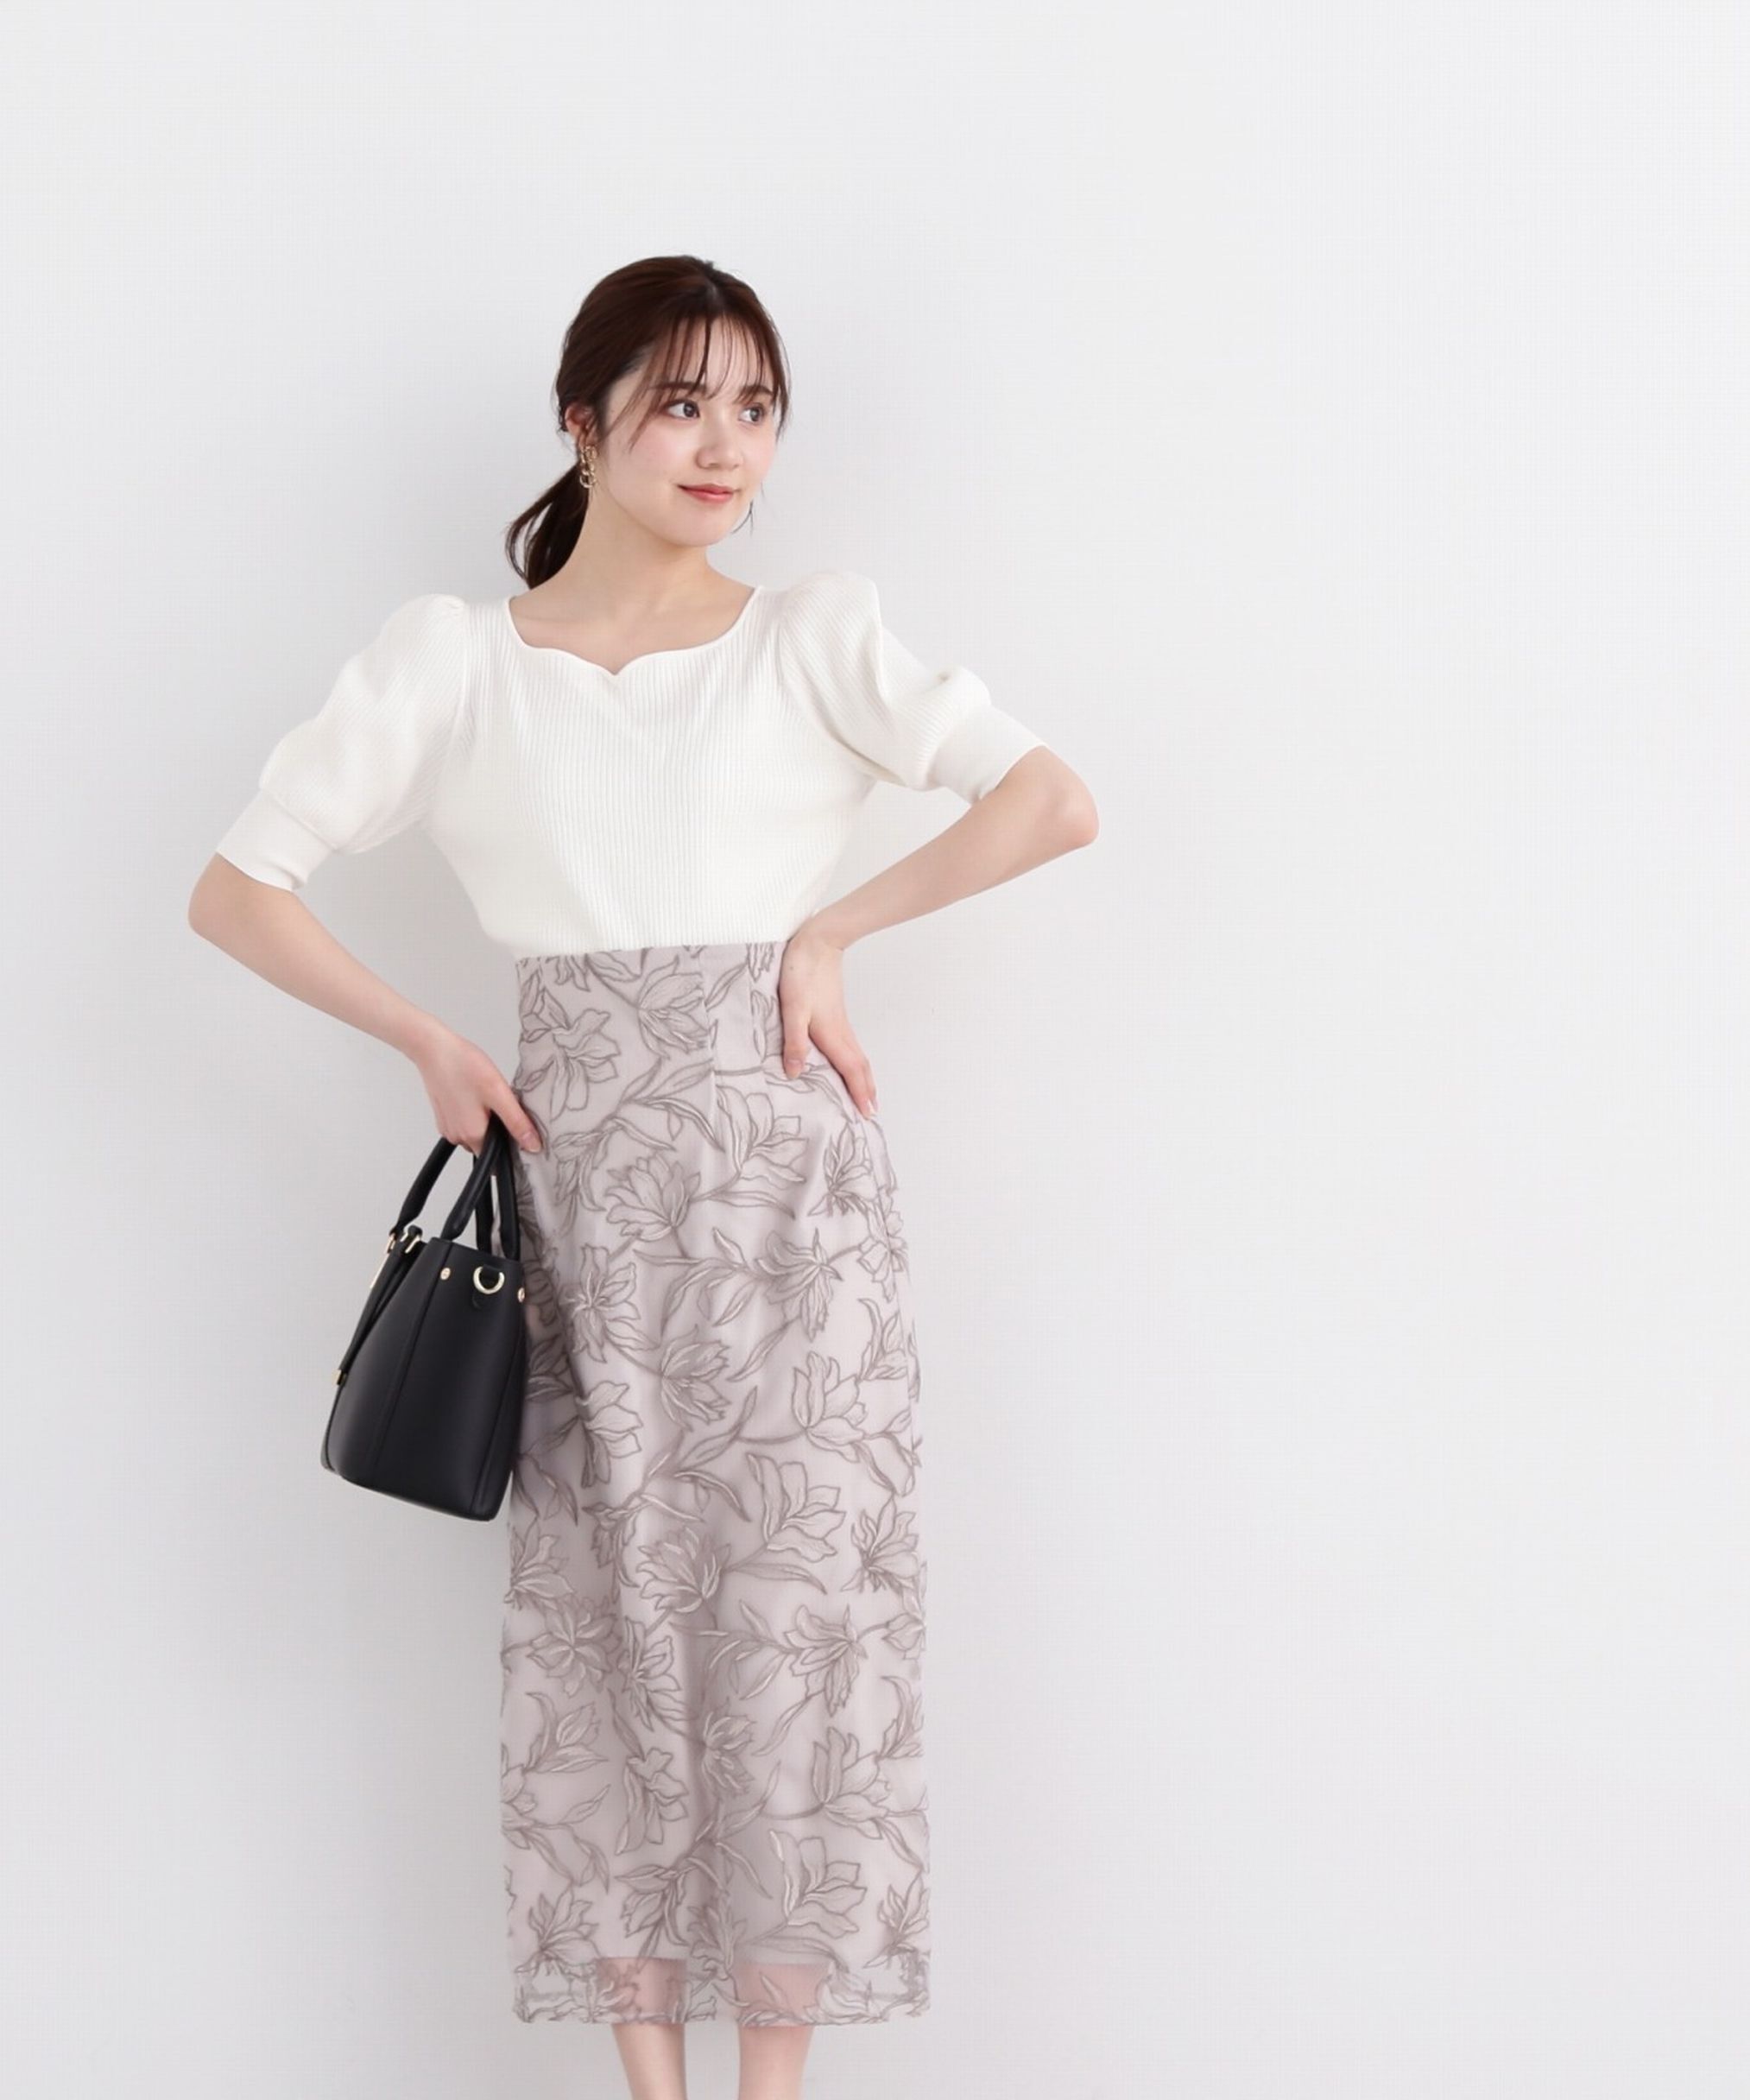 フラワーオーガン刺繍タイトスカート|PROPORTION BODY DRESSING 